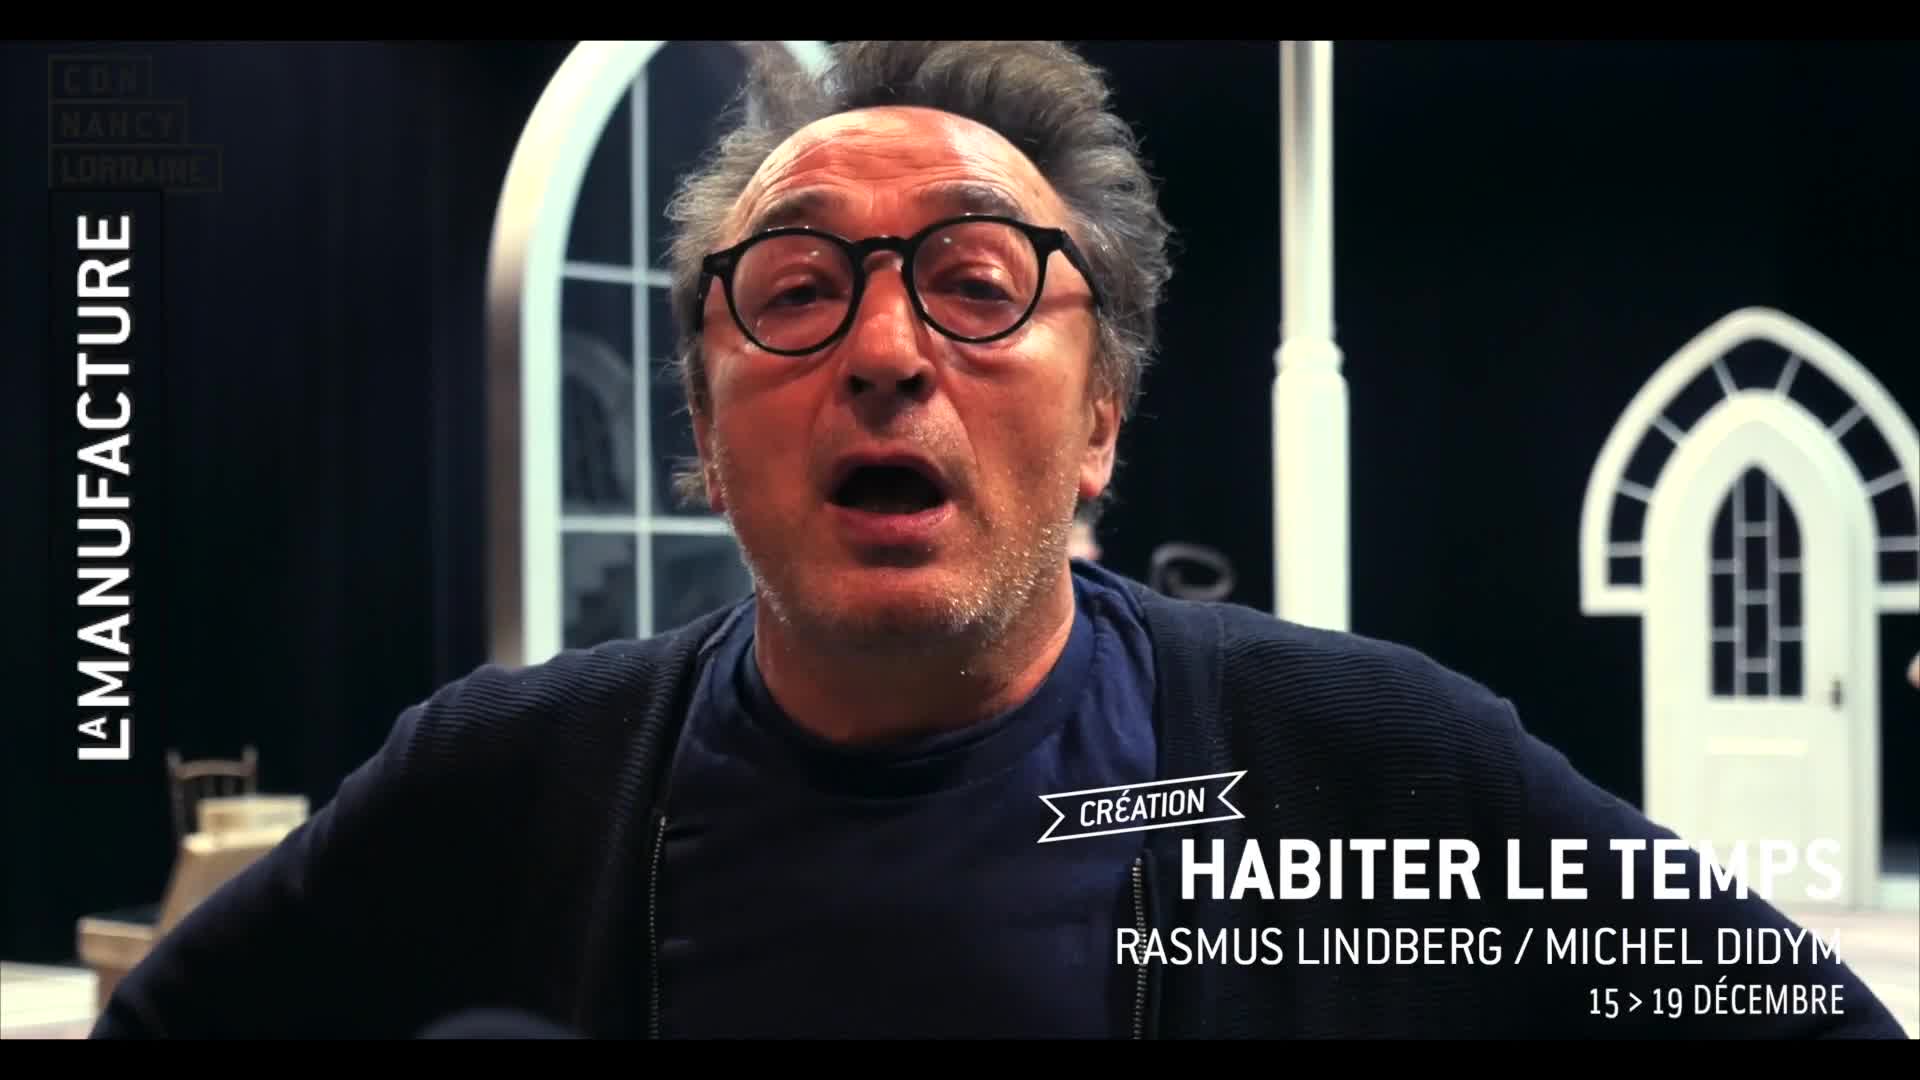 Vidéo "Habiter le temps" - Rasmus Lindberg/Michel Didym - Carnet de création #1